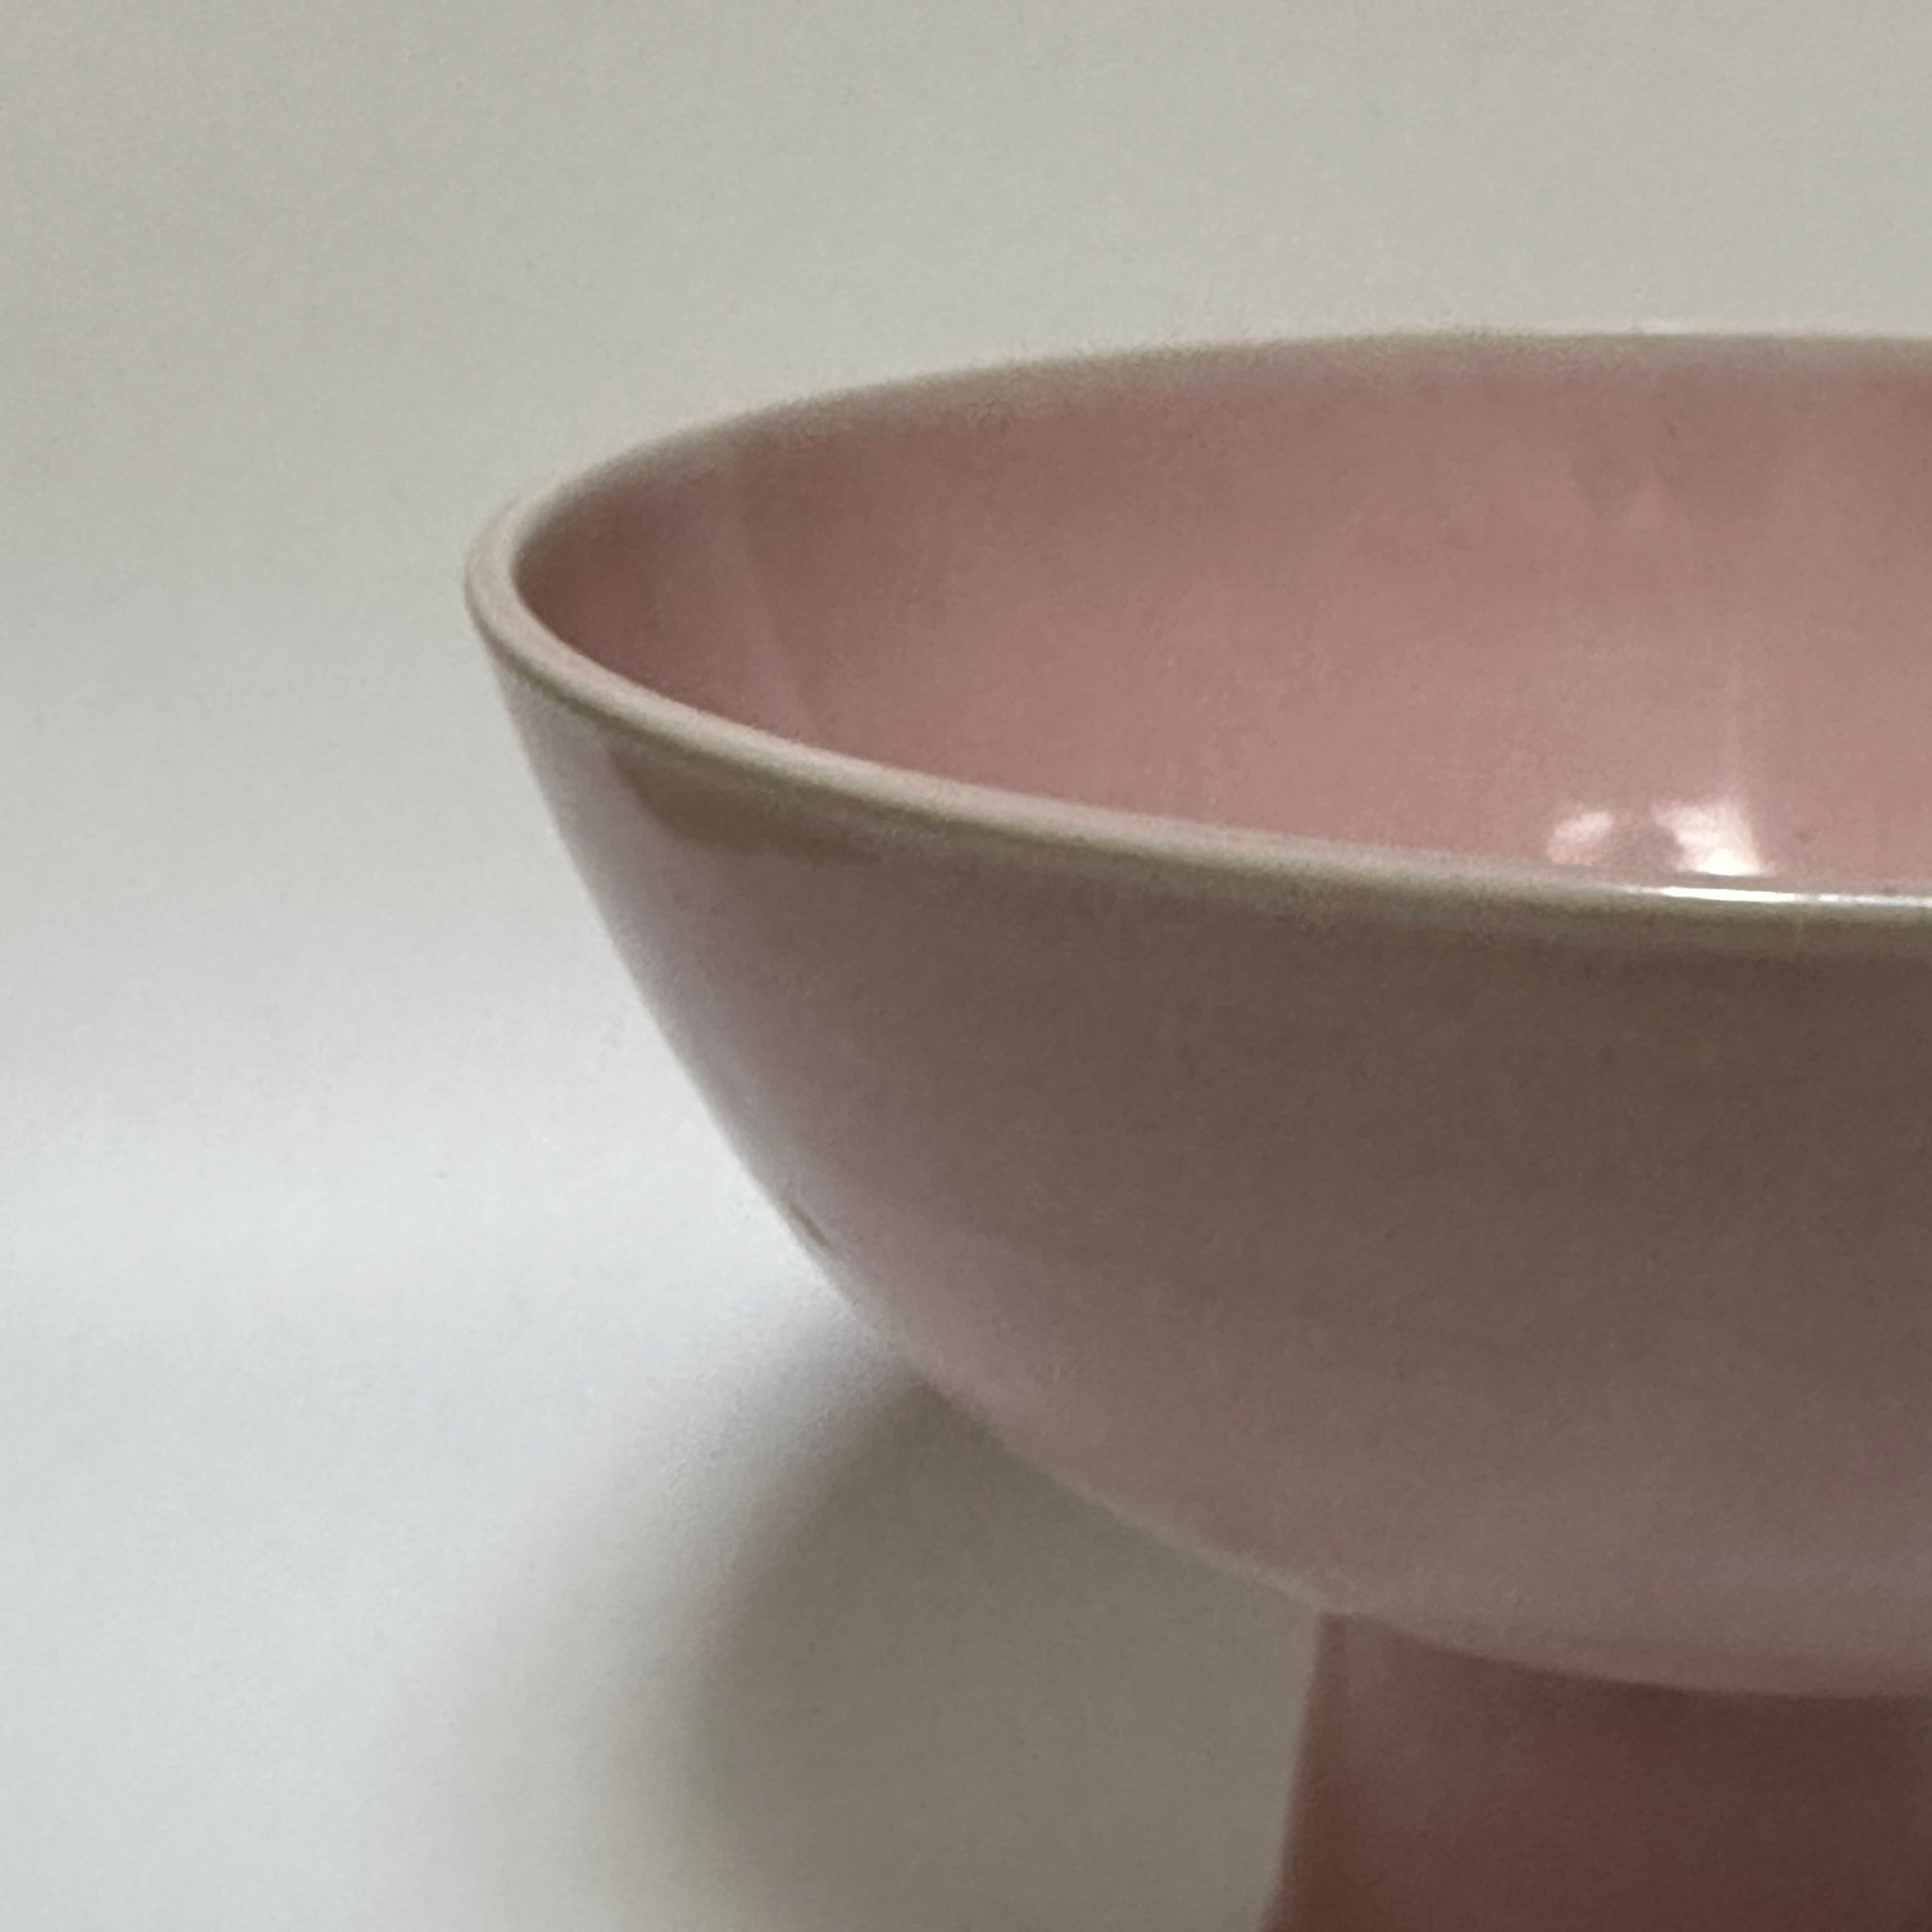 Pink Fruit Bowl